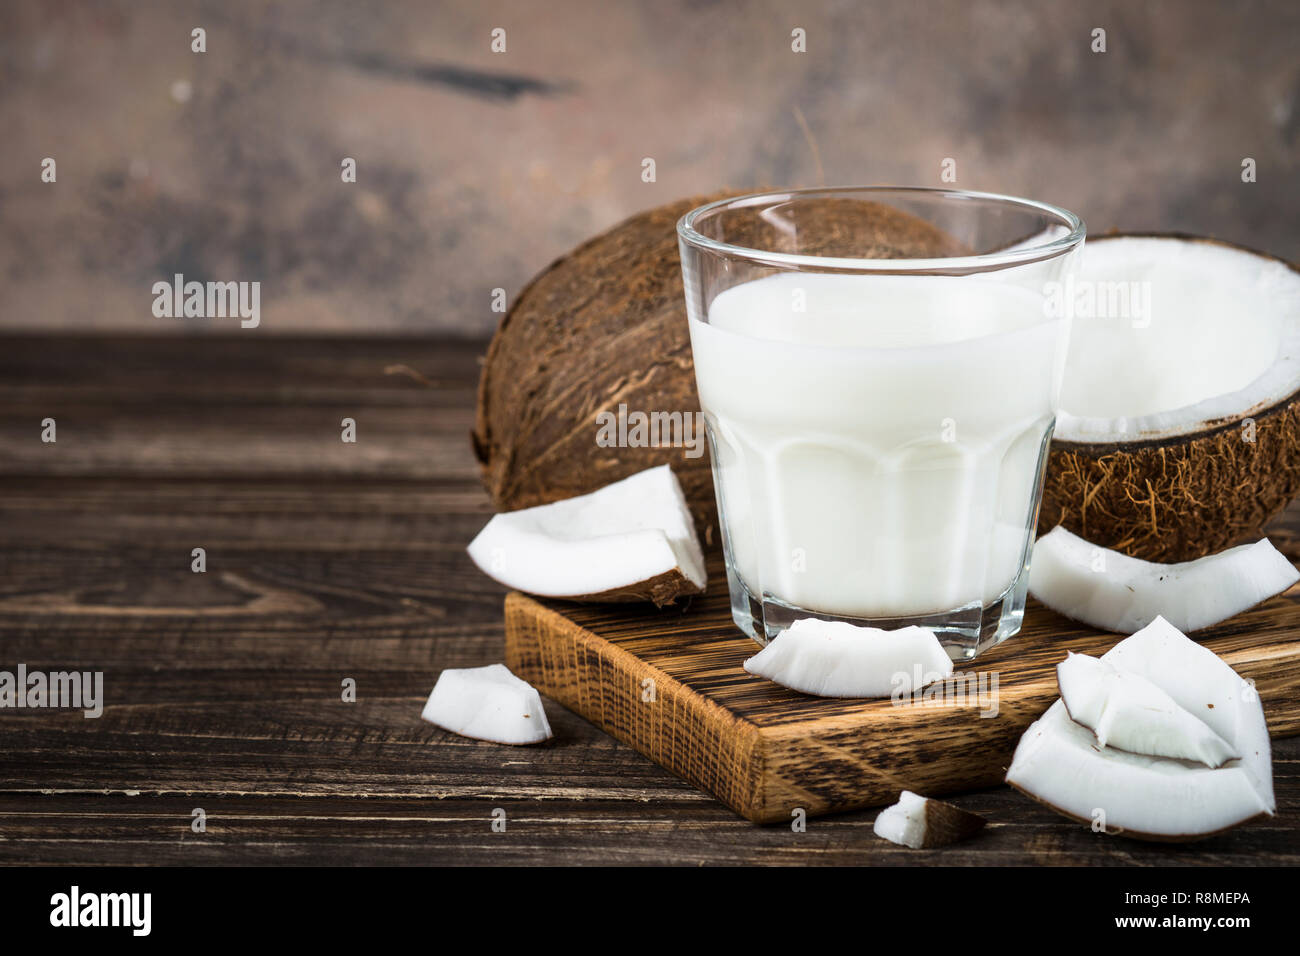 Coconut milk in glass, Vegan milk.  Stock Photo